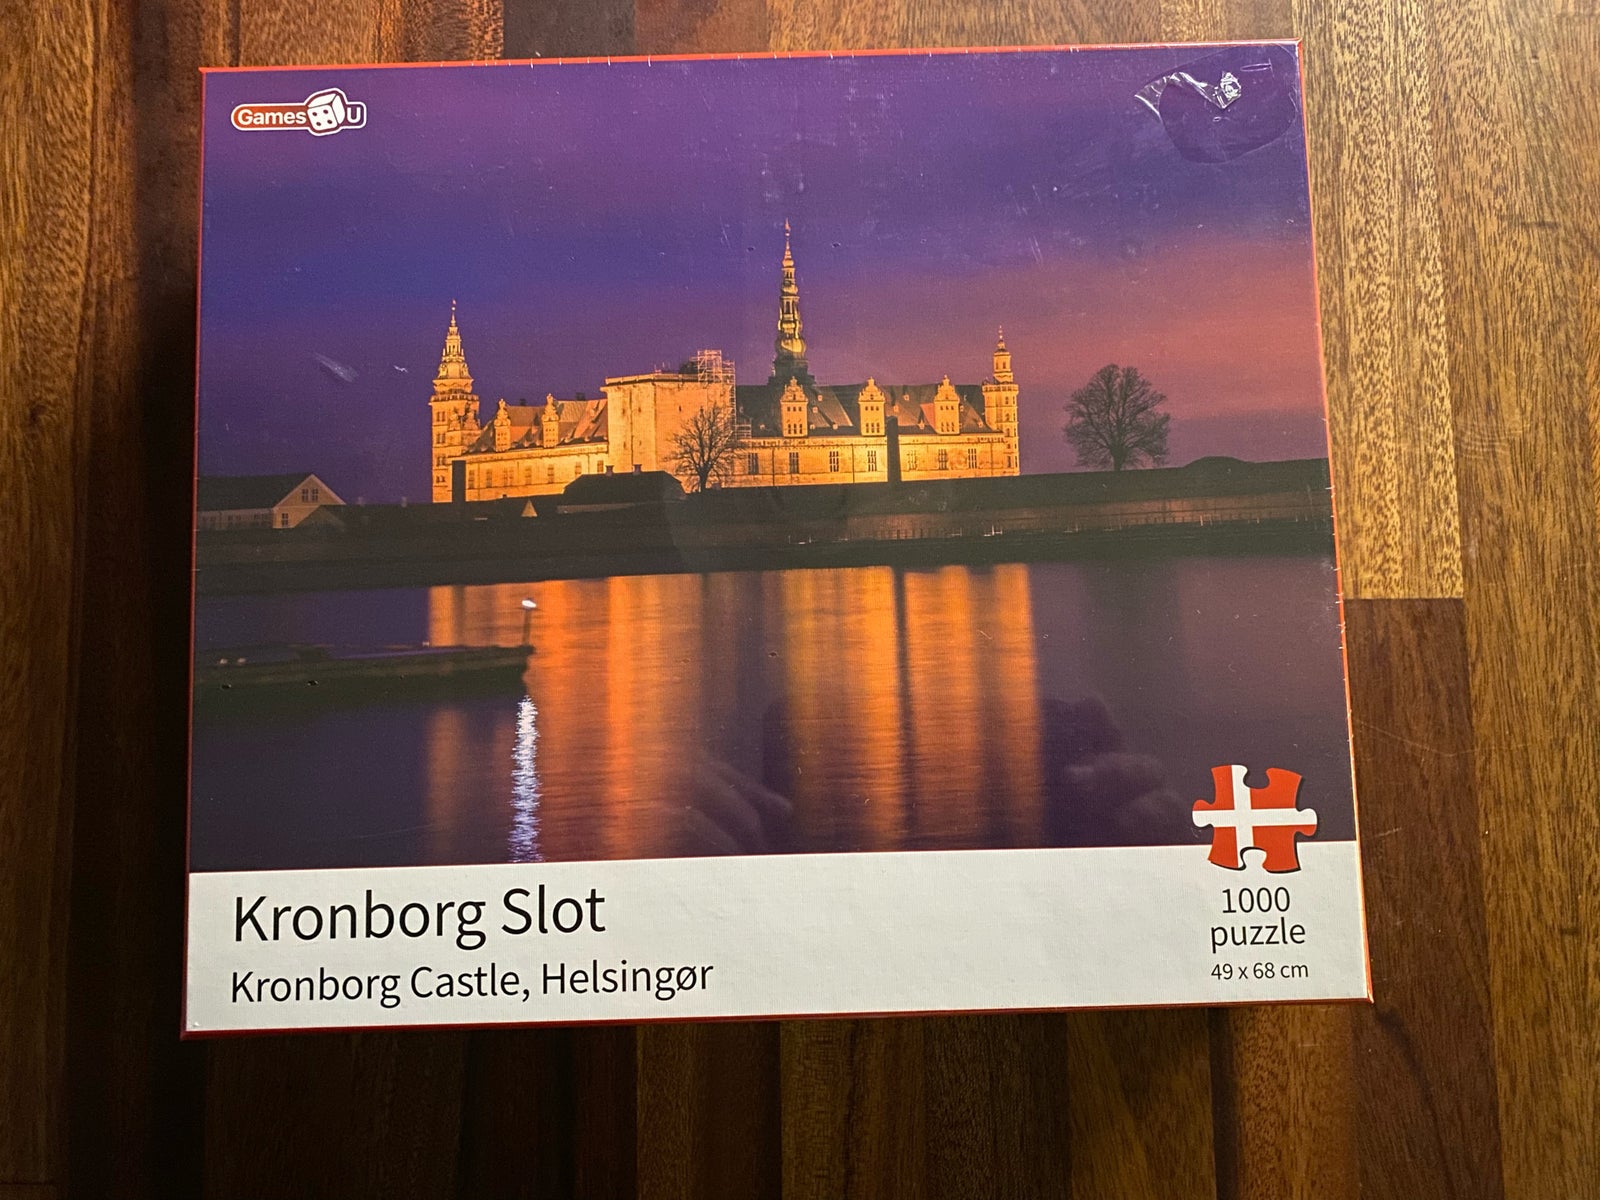 redensborg Slot, Kronborg Slot, Himmelbjerget